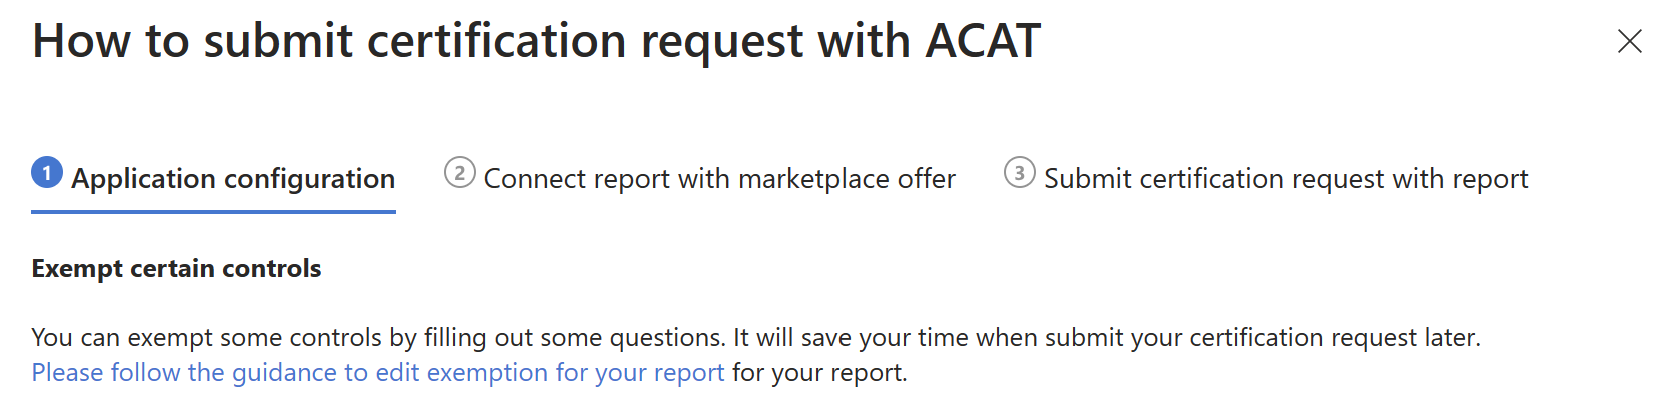 Guía para enviar la certificación con ACAT